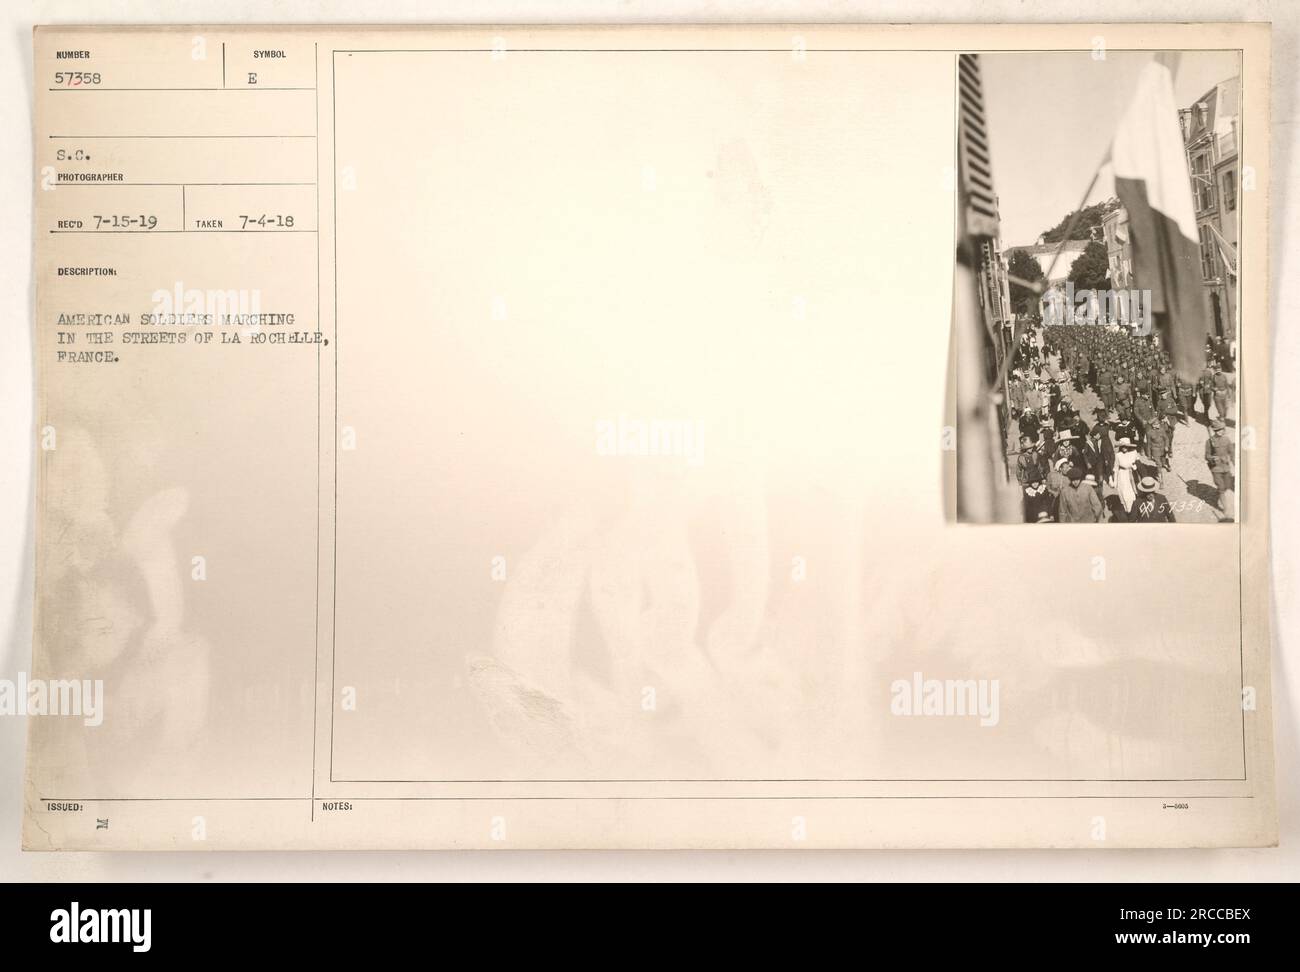 Soldati americani che marciano per le strade di la Rochelle, in Francia. Fotografia scattata il 4 luglio 1918 e rilasciata con il simbolo e 7-15-19. I soldati sono visti nelle loro uniformi, portando i loro fucili e marciando in formazione. Foto Stock